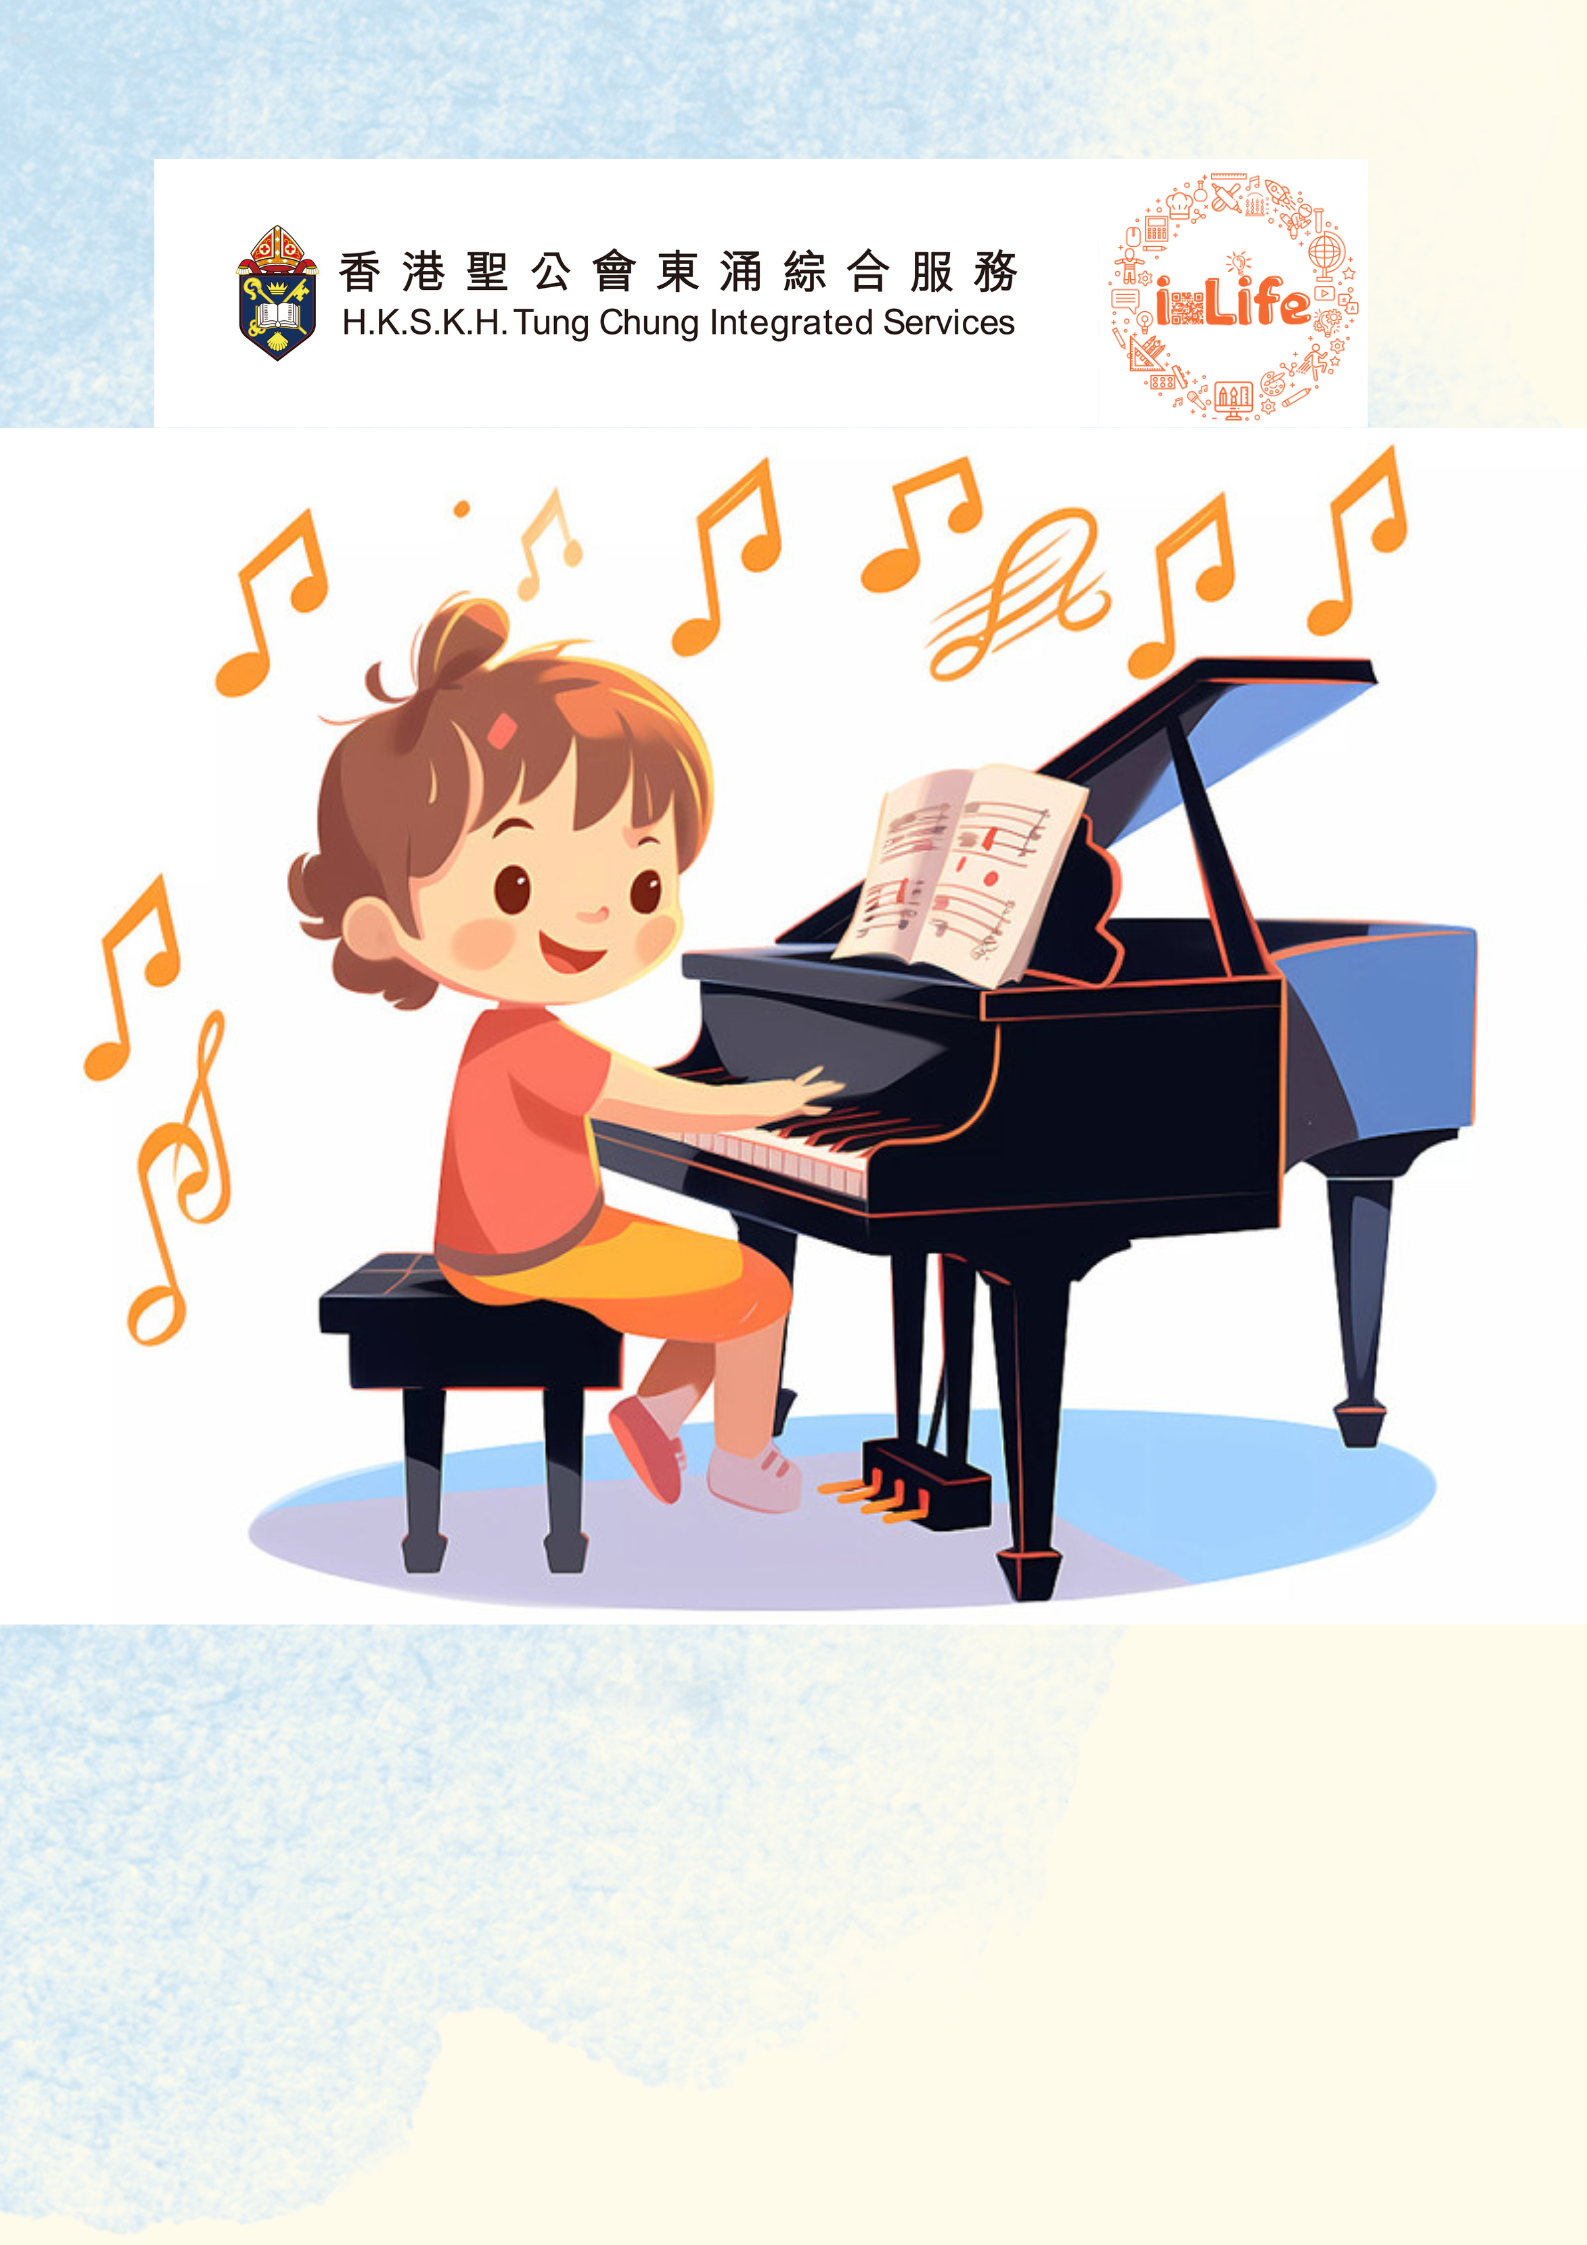 鋼琴(個別教授，富東) 3月 陳琪薇